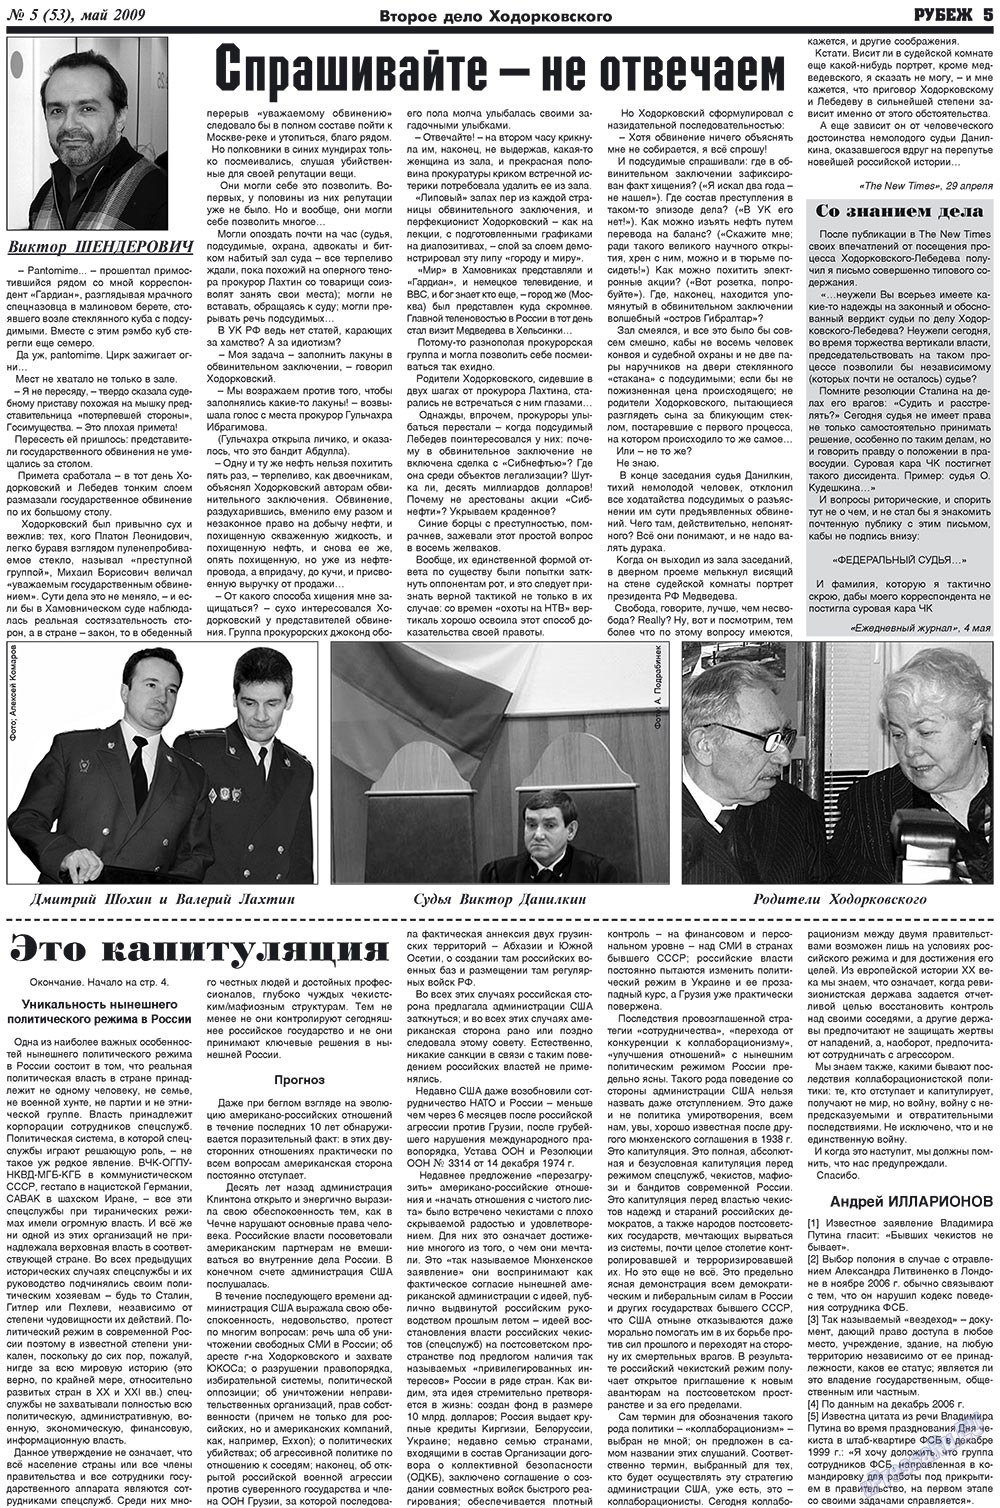 Рубеж (газета). 2009 год, номер 5, стр. 5